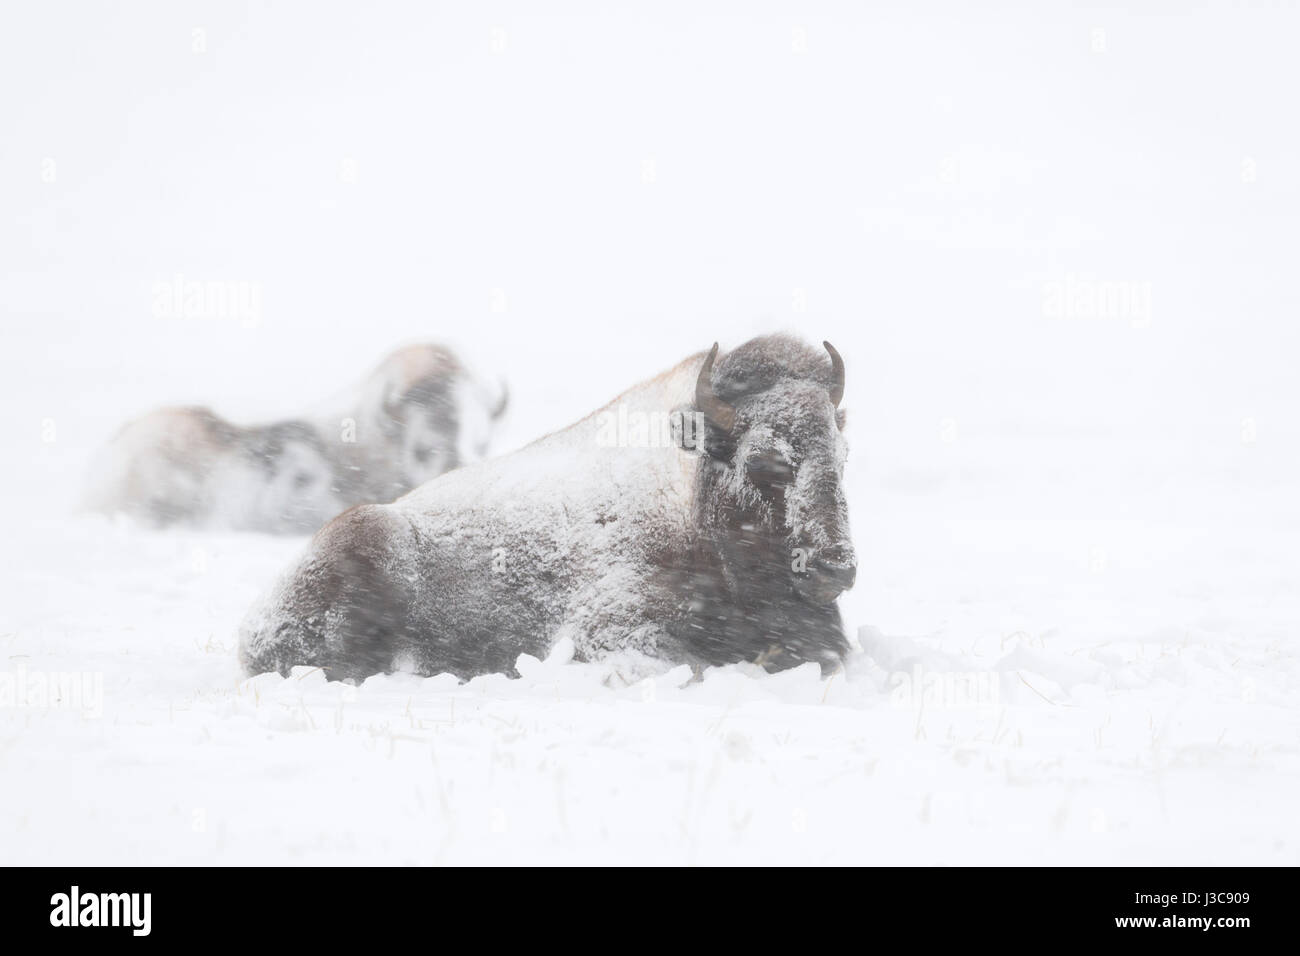 Amerikanische Bisons (Bison Bison) im Winter liegen, ruhen, Grübeln im Schnee, in einem Schneesturm in starkem Schneefall bedeckt / verkrustet mit Schnee, USA. Stockfoto